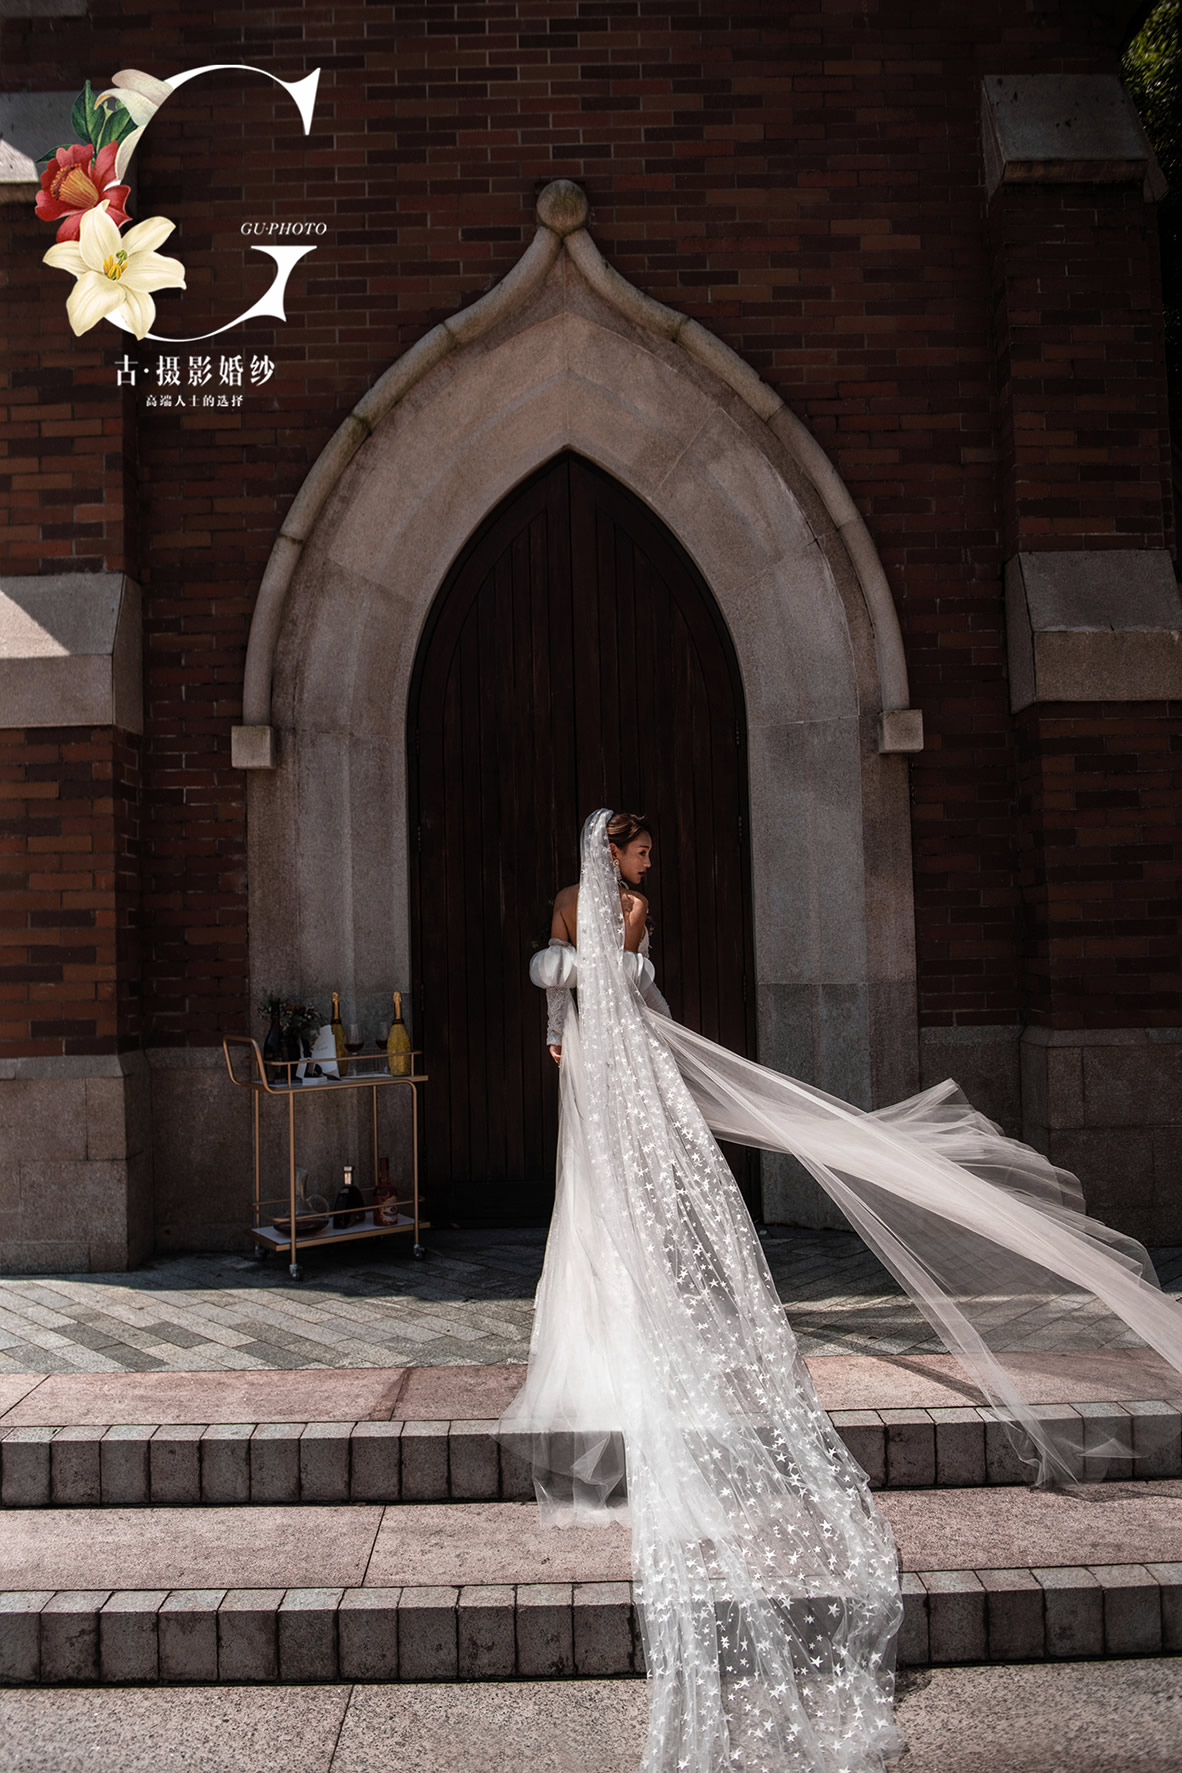 全新公主道《布拉格广场》 - 拍摄地 - 广州婚纱摄影-广州古摄影官网